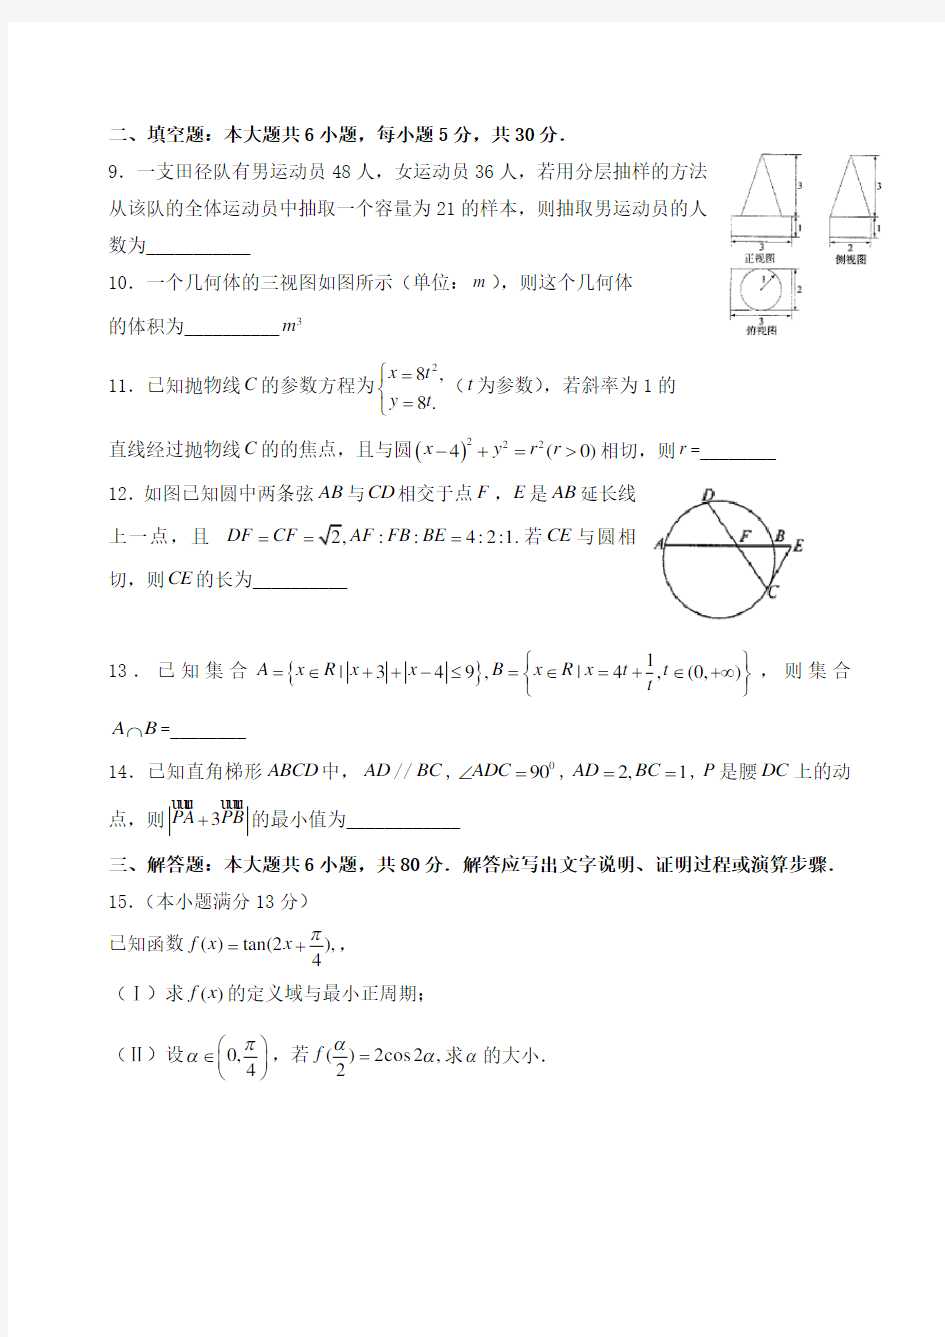 (完整版)2011年高考数学天津卷(理科)